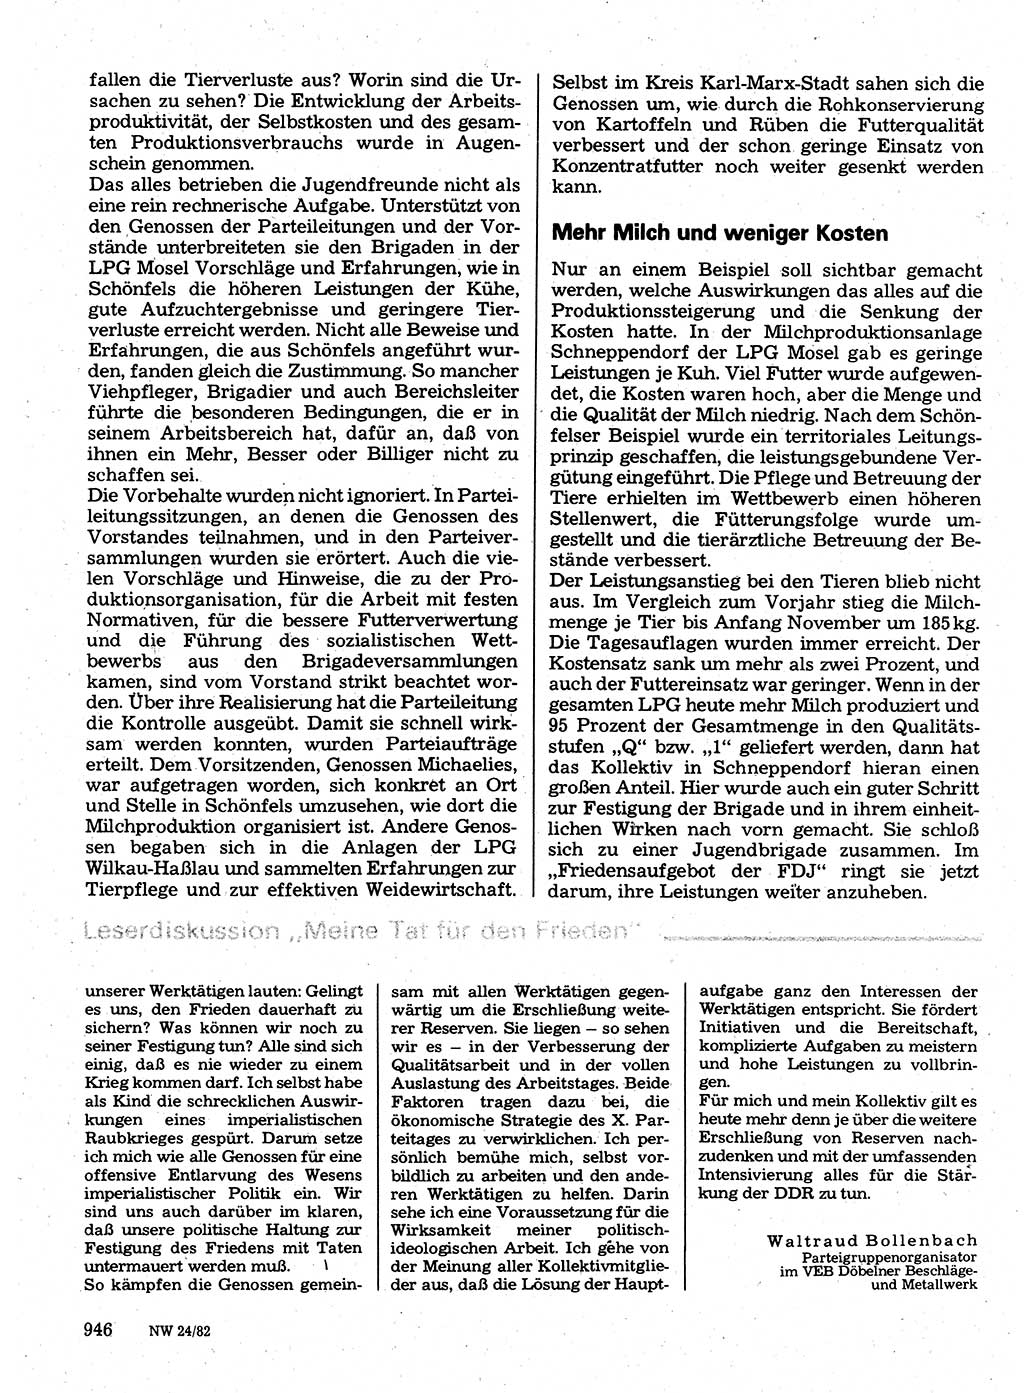 Neuer Weg (NW), Organ des Zentralkomitees (ZK) der SED (Sozialistische Einheitspartei Deutschlands) für Fragen des Parteilebens, 37. Jahrgang [Deutsche Demokratische Republik (DDR)] 1982, Seite 946 (NW ZK SED DDR 1982, S. 946)